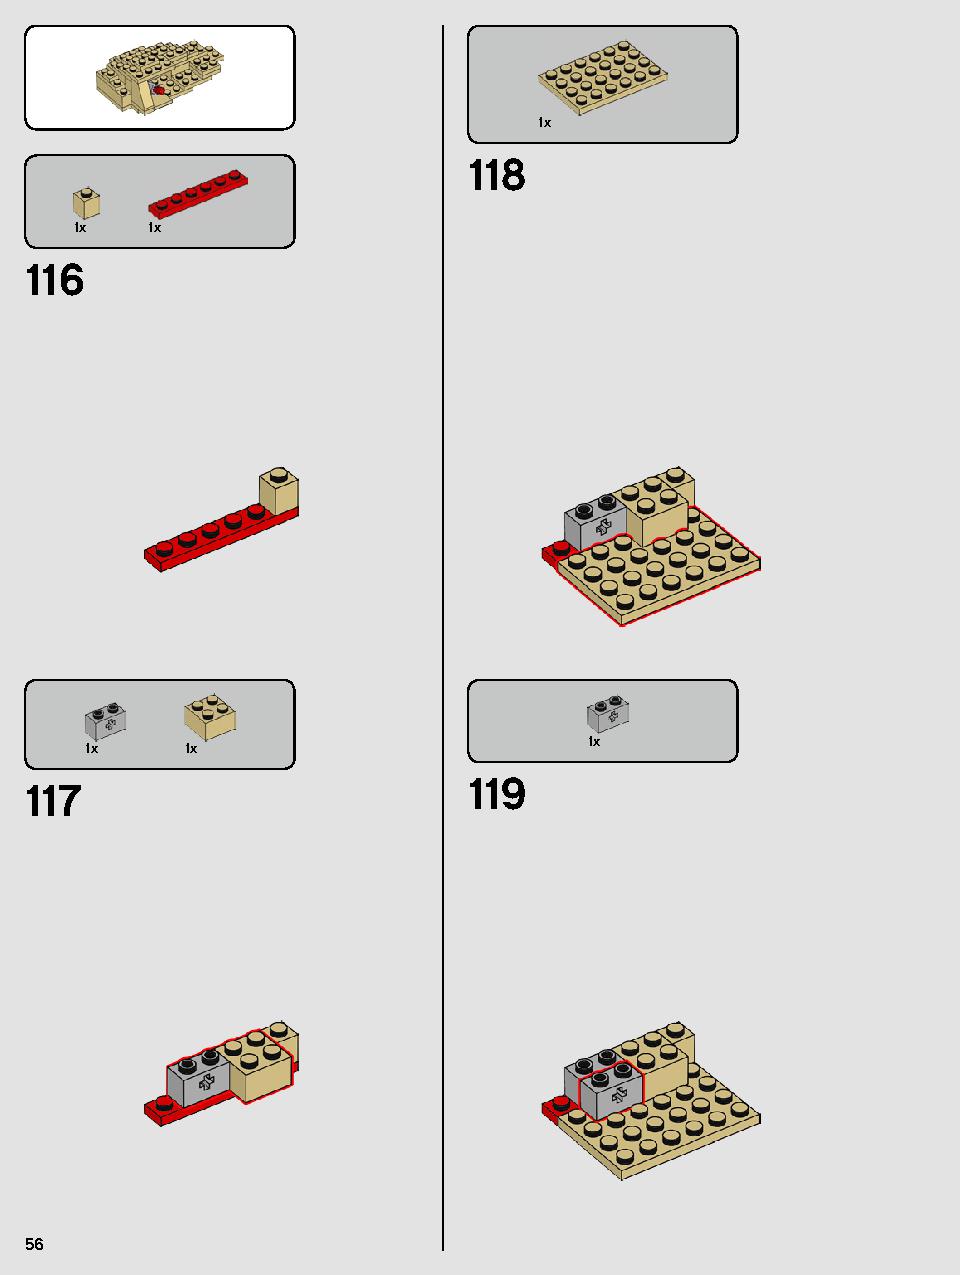 ヨーダ™ 75255 レゴの商品情報 レゴの説明書・組立方法 56 page